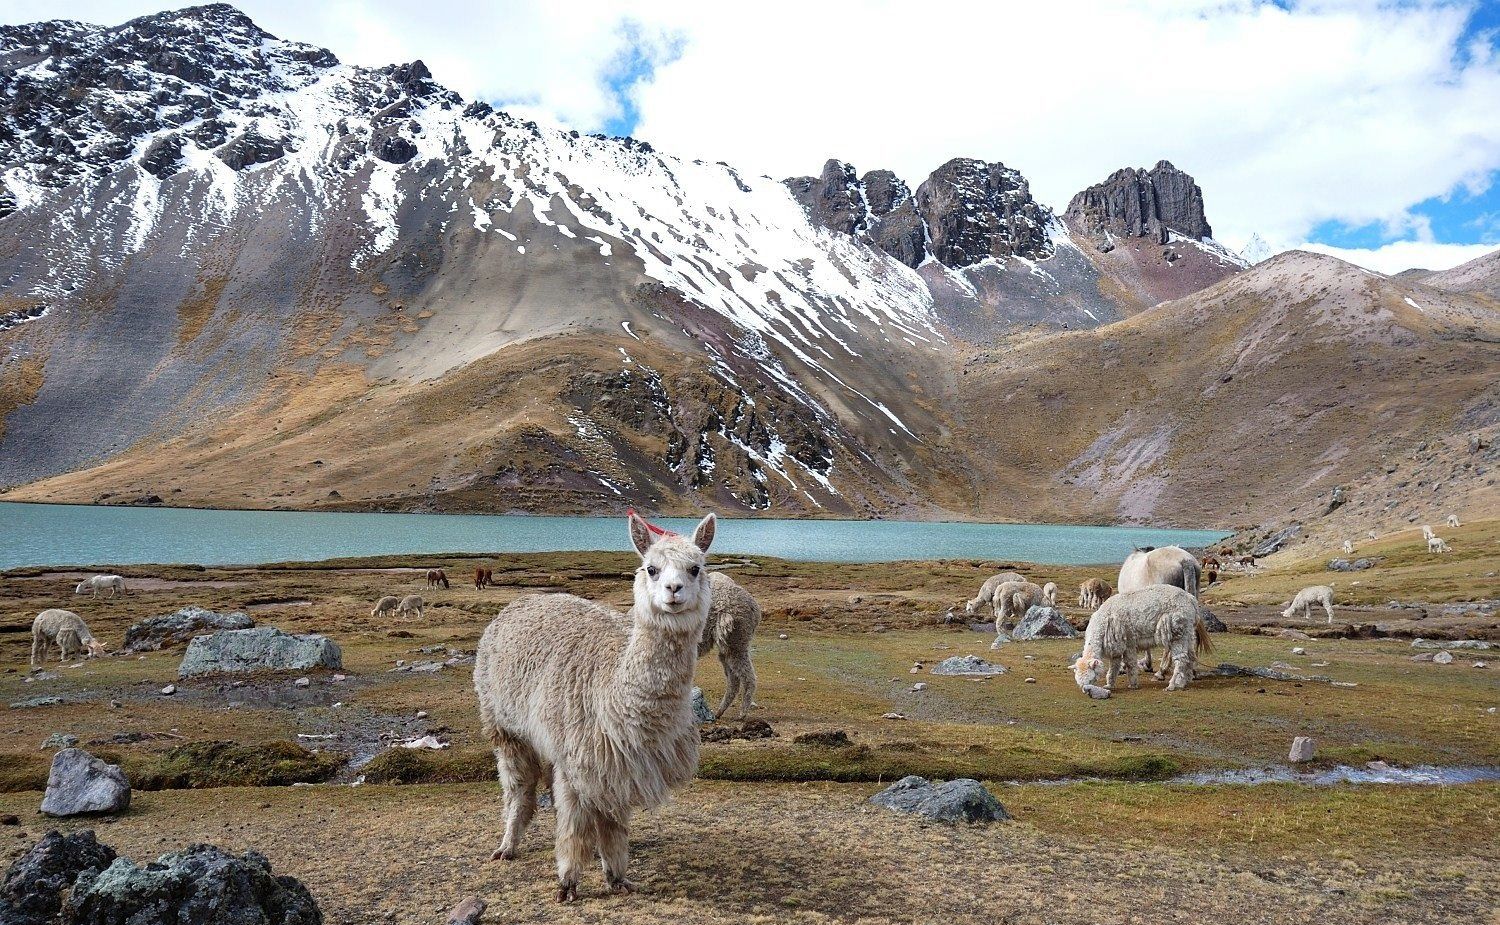 Llamas in Andes of Peru